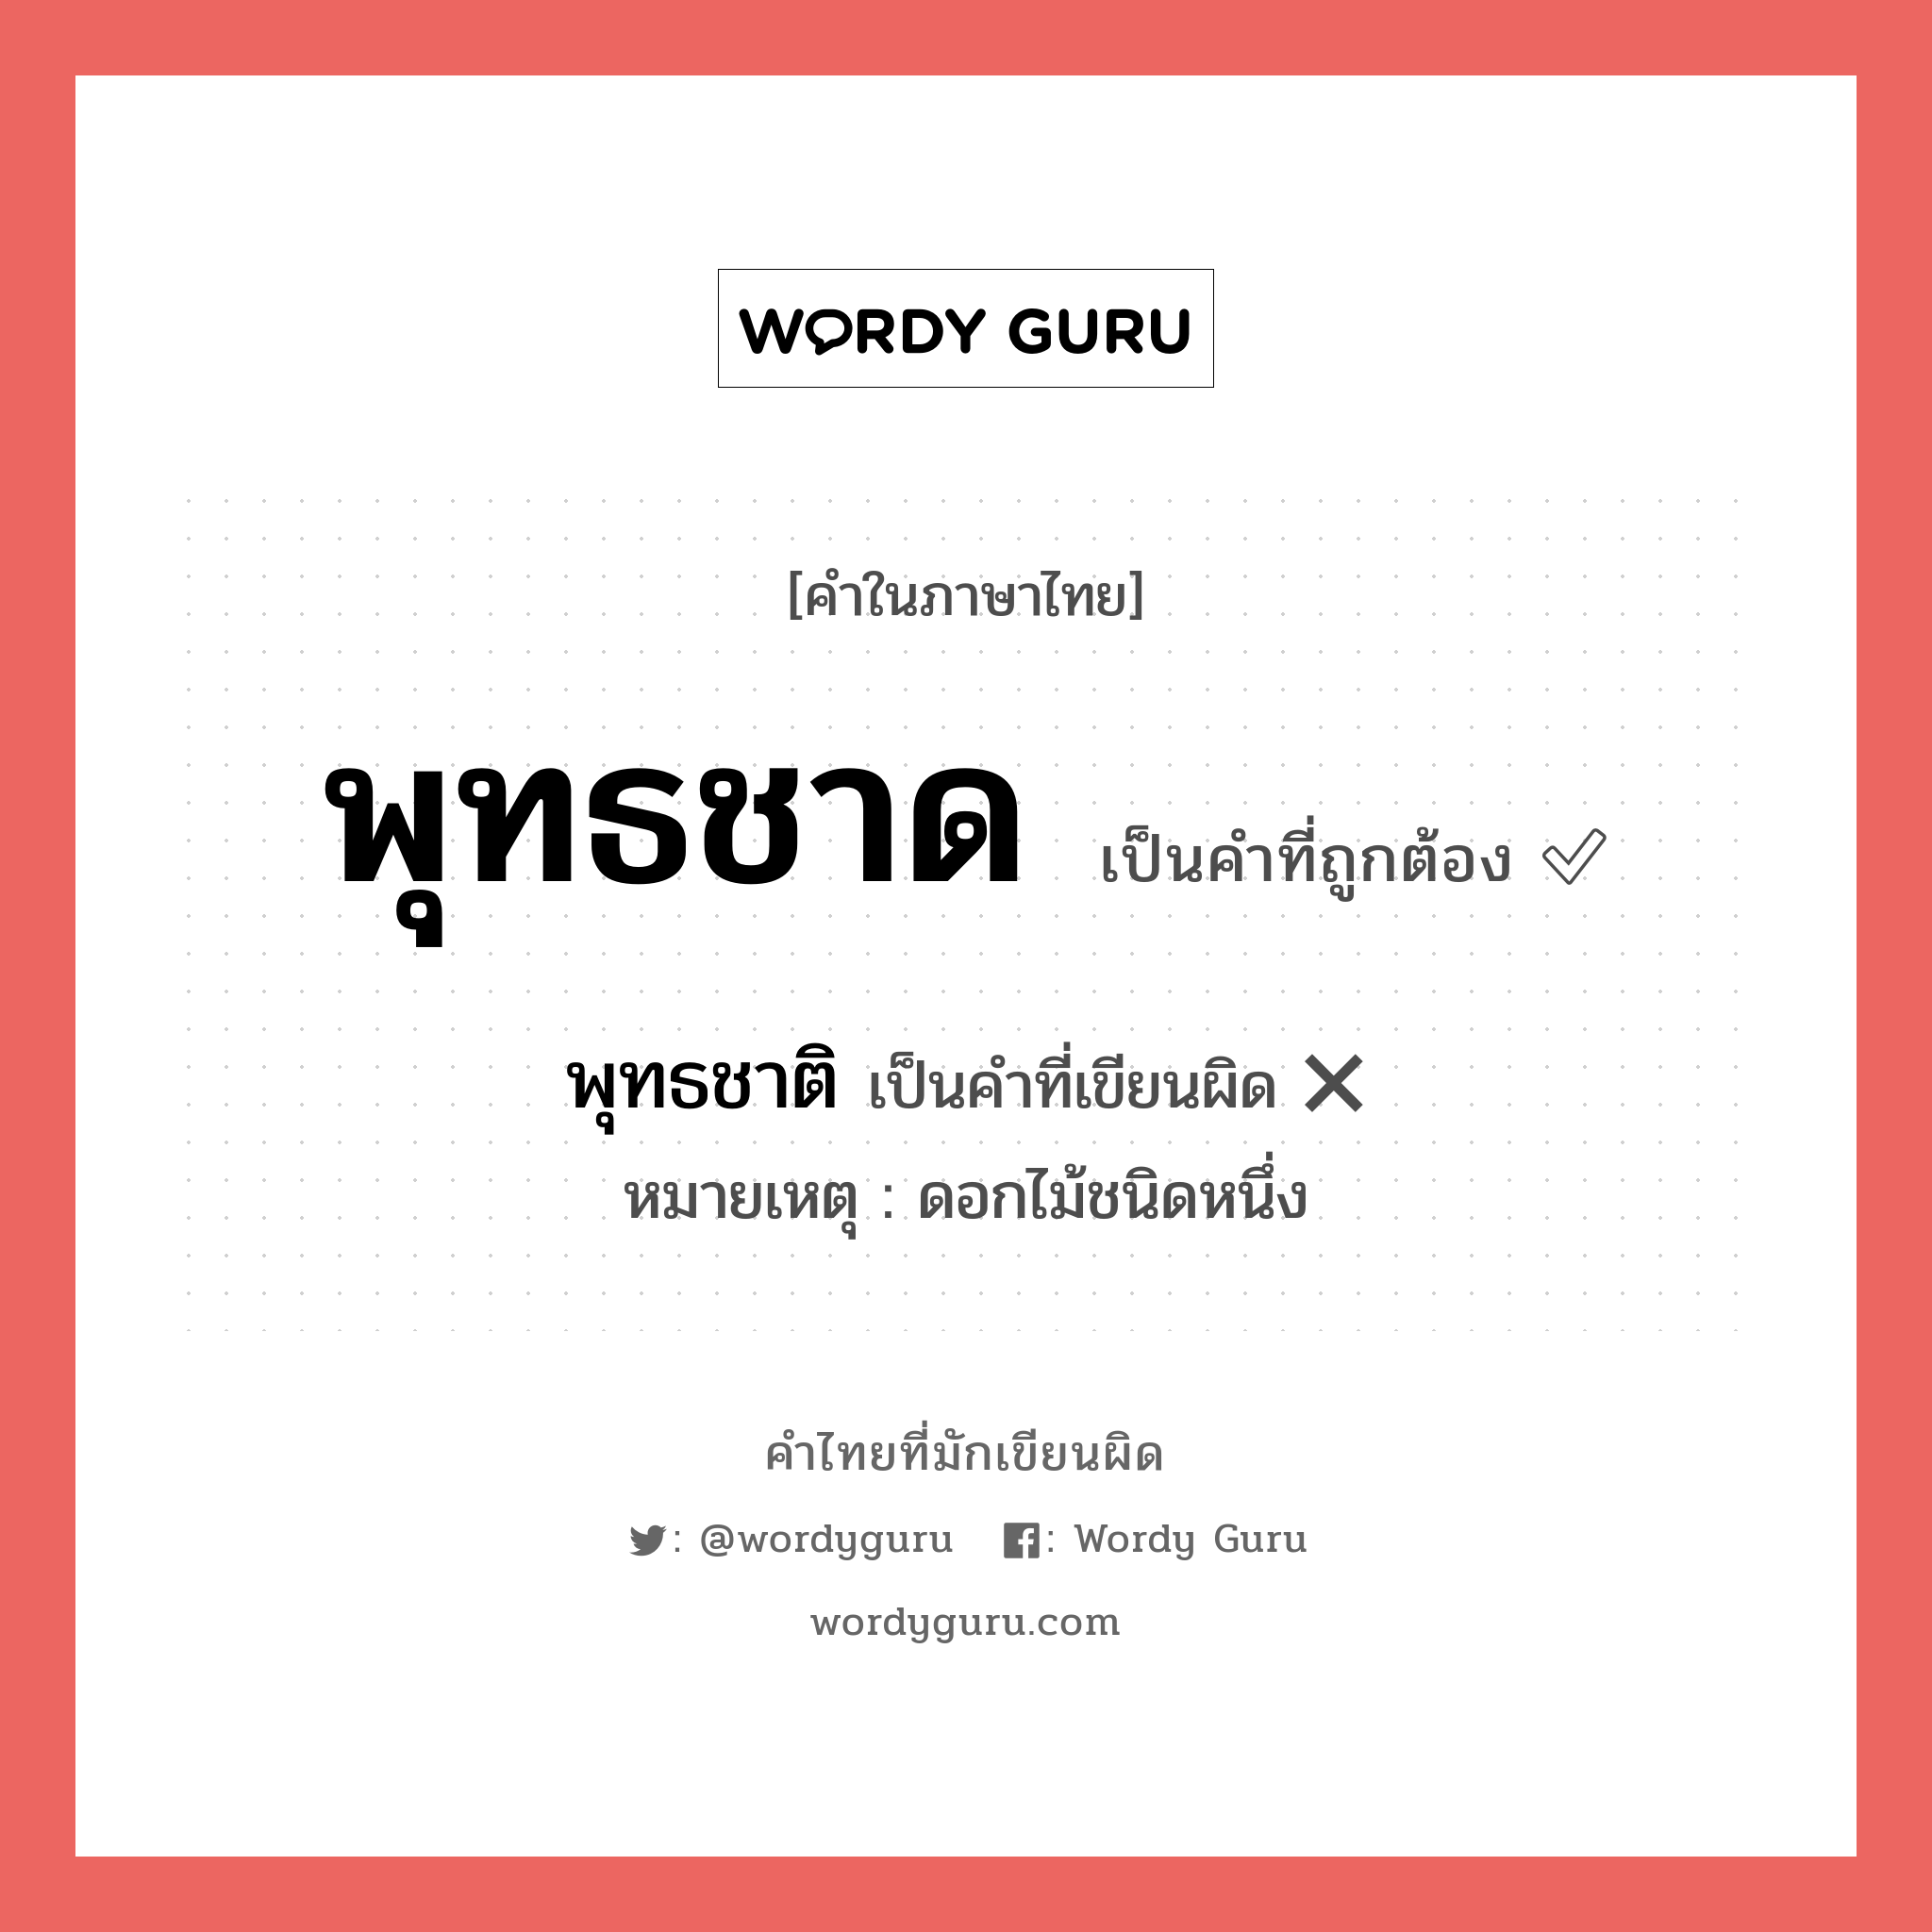 พุทธชาด หรือ พุทธชาติ คำไหนเขียนถูก?, คำในภาษาไทยที่มักเขียนผิด พุทธชาด คำที่ผิด ❌ พุทธชาติ หมายเหตุ ดอกไม้ชนิดหนึ่ง